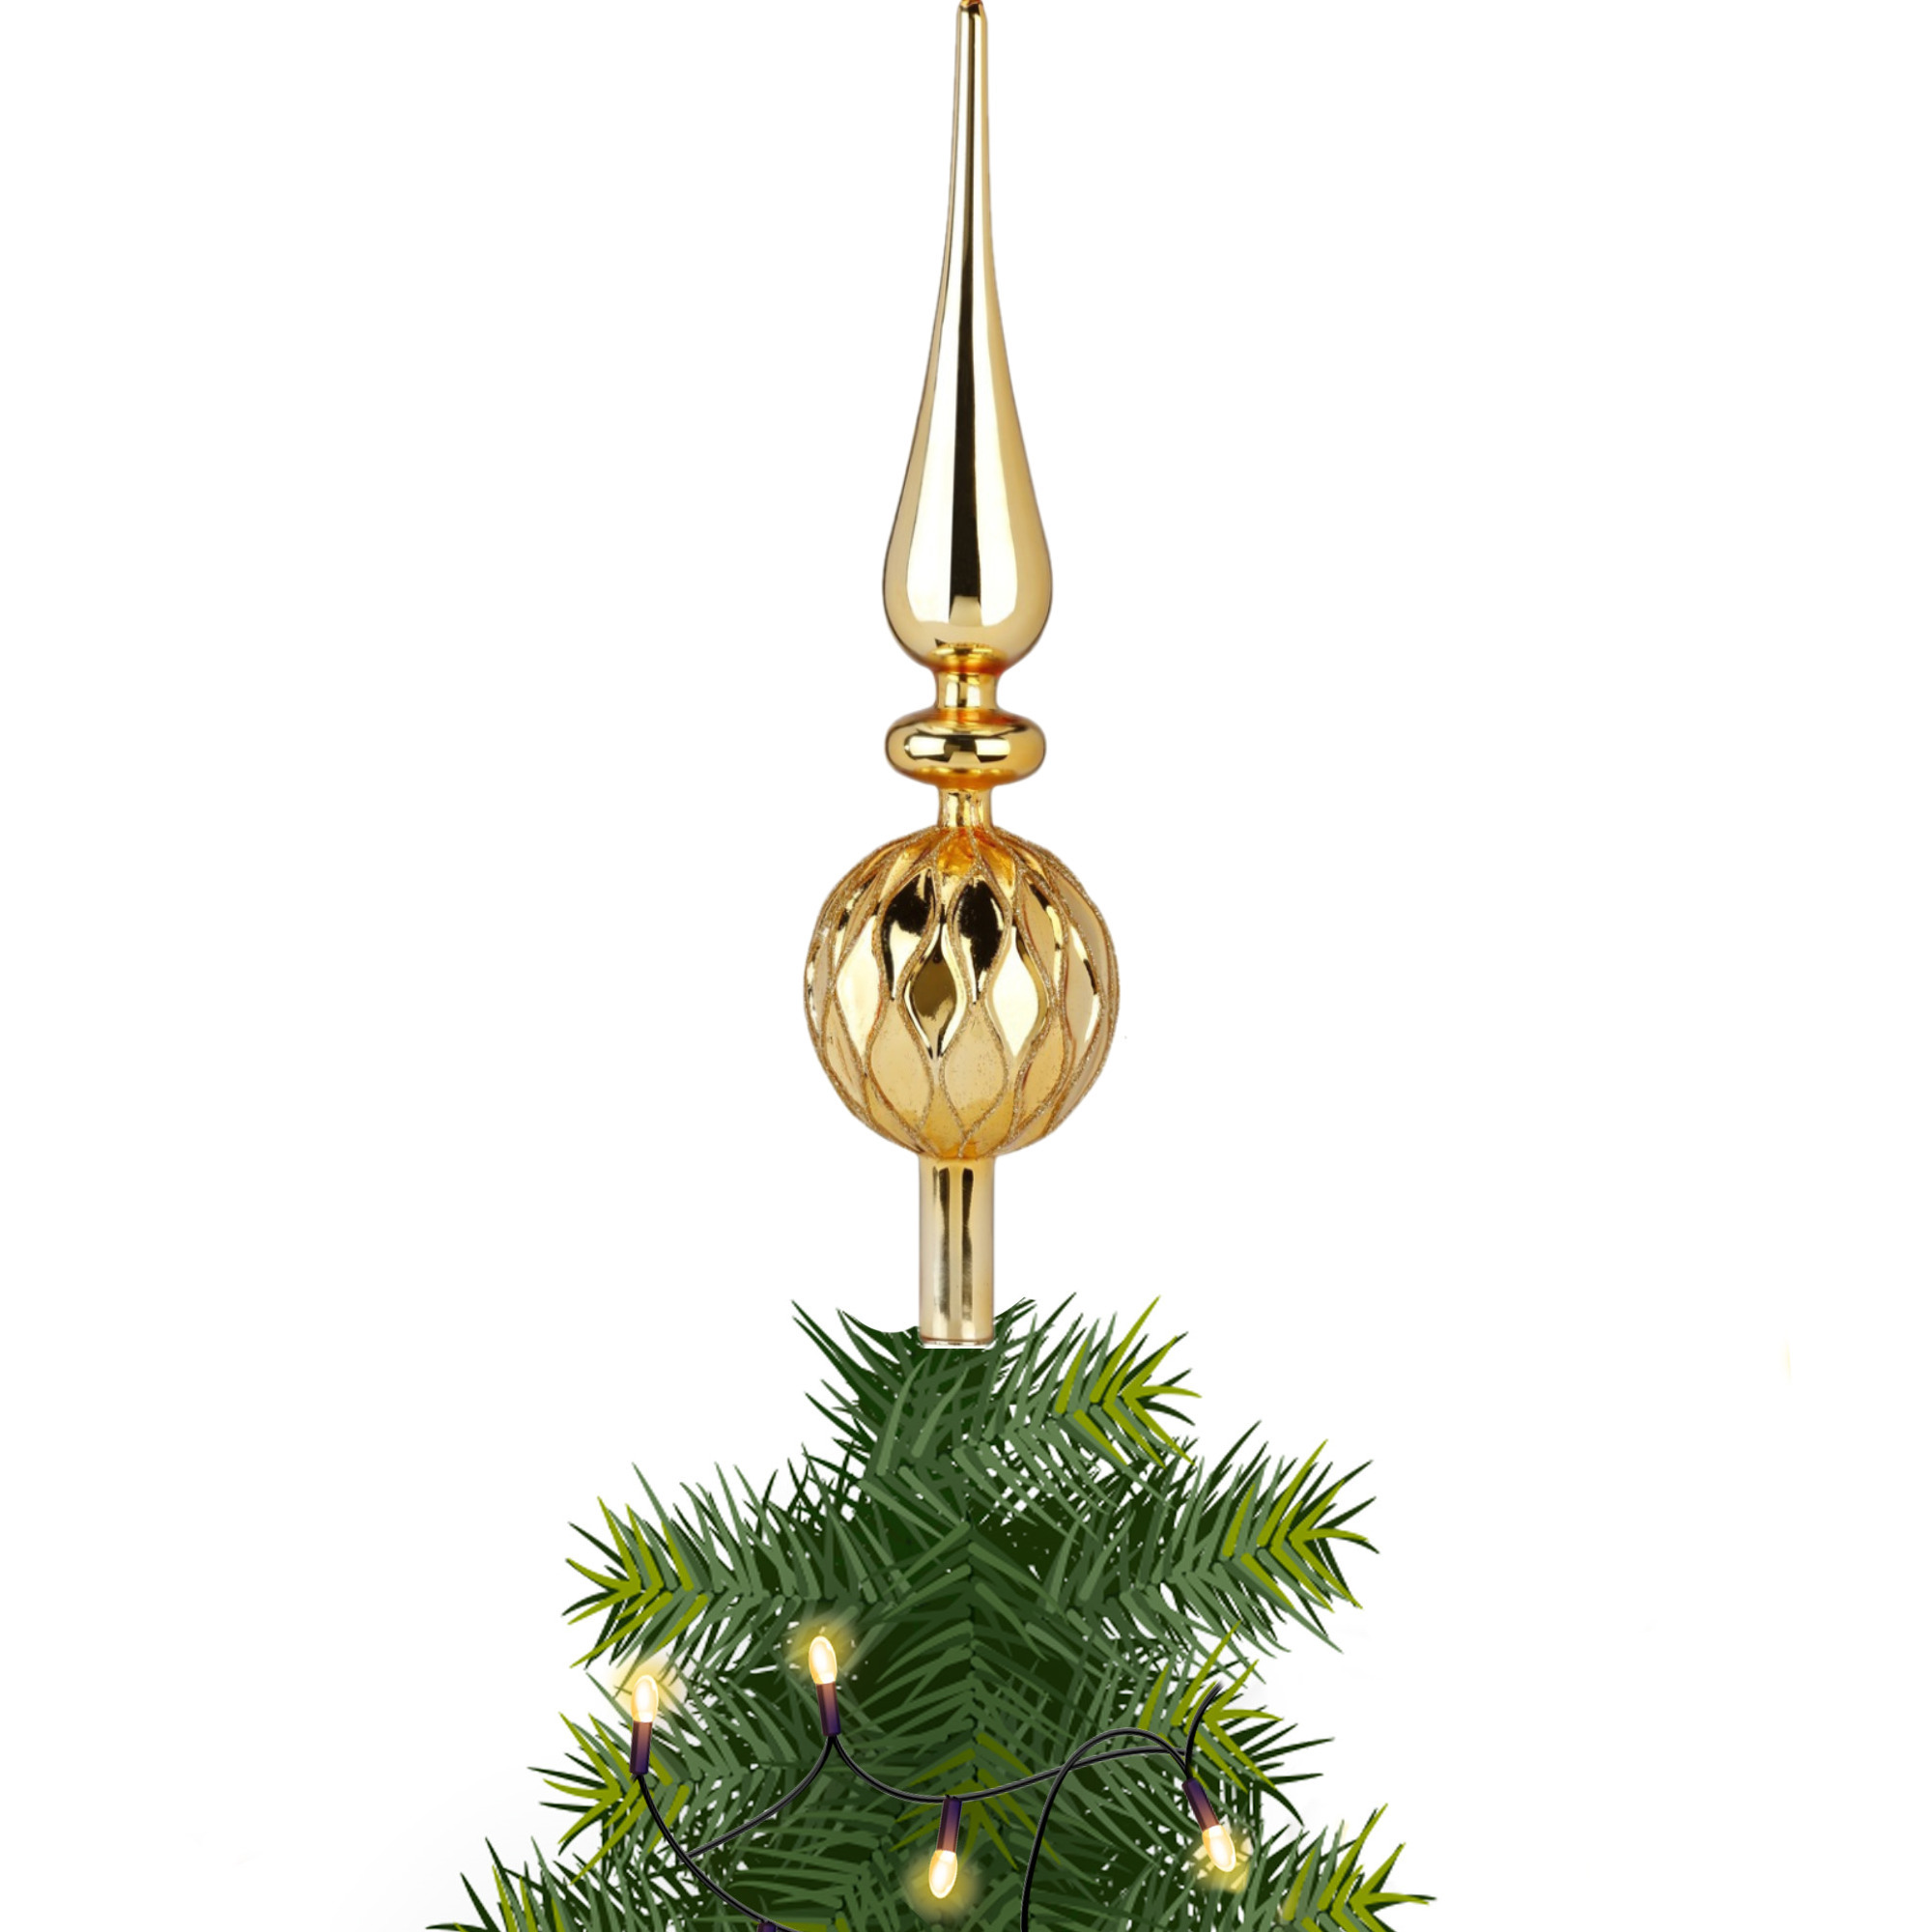 Piek/kerstboom topper - glas - H31 cm - goud gedecoreerd - Kerstversiering